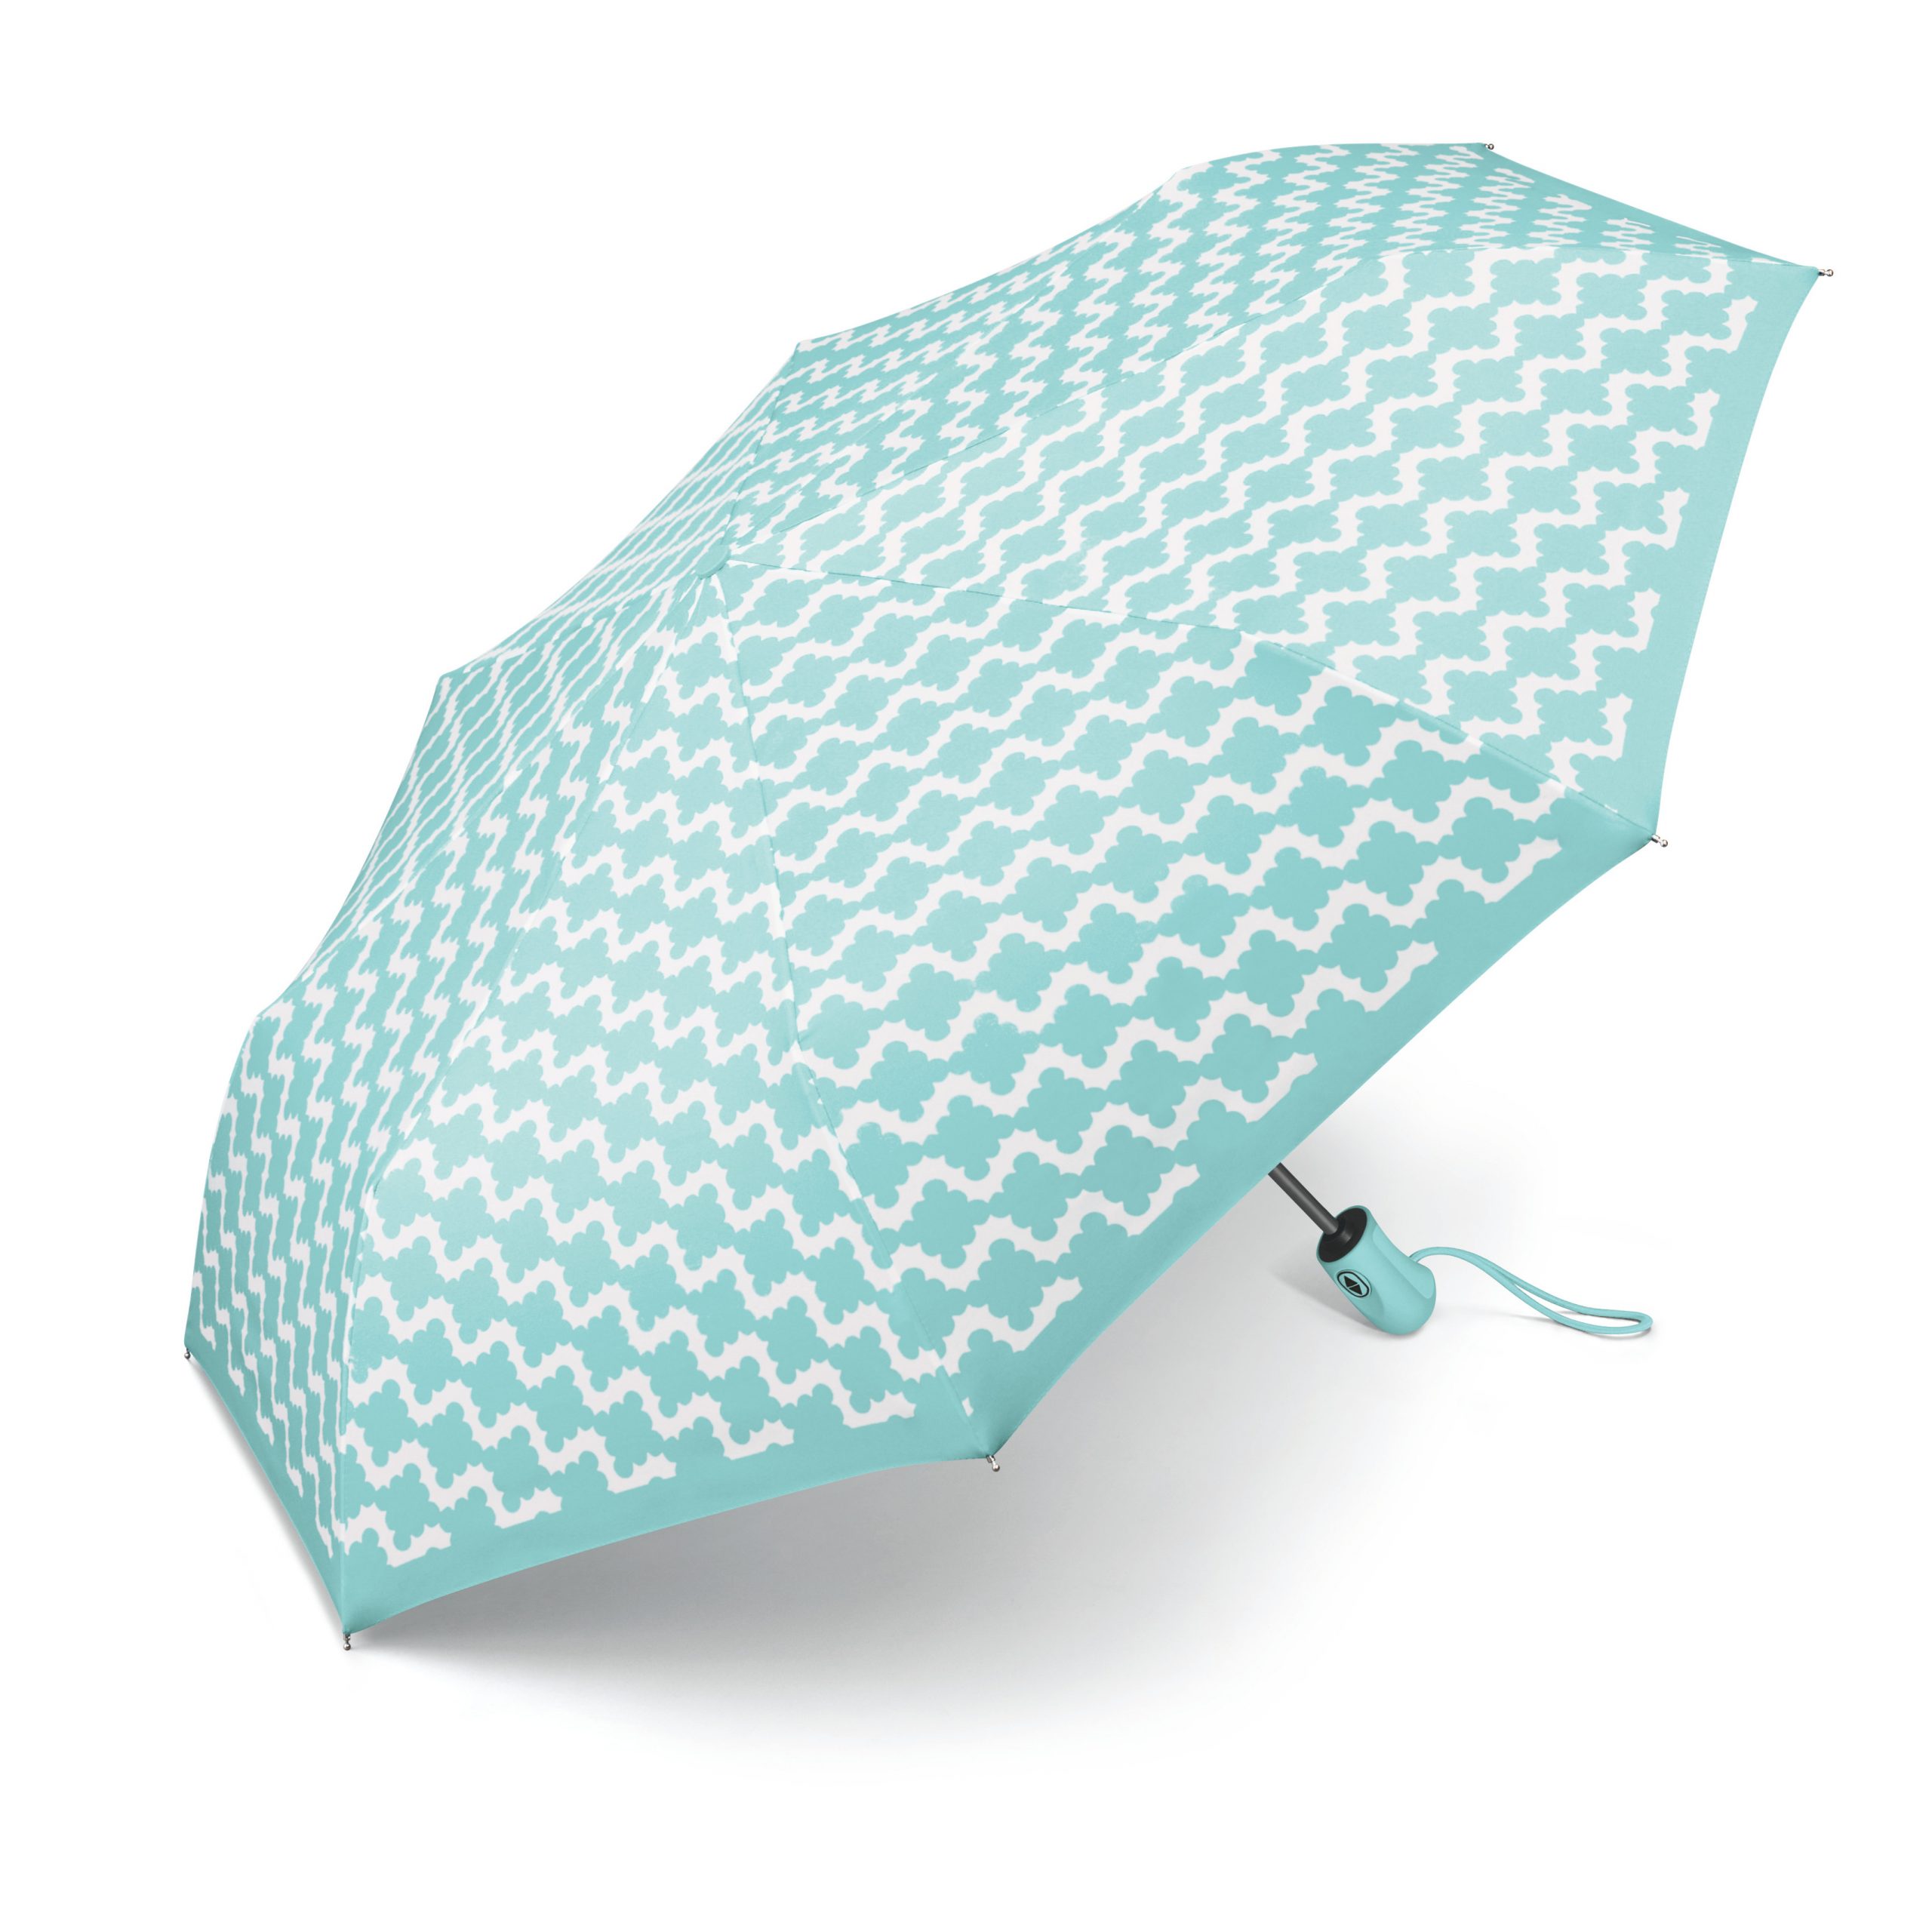 Paraguas plegable Abre y Cierra Esprit Cenefa y Turquesa - Esprit, Paraguas Originales, Paraguas plegable Mujer - Que puedo